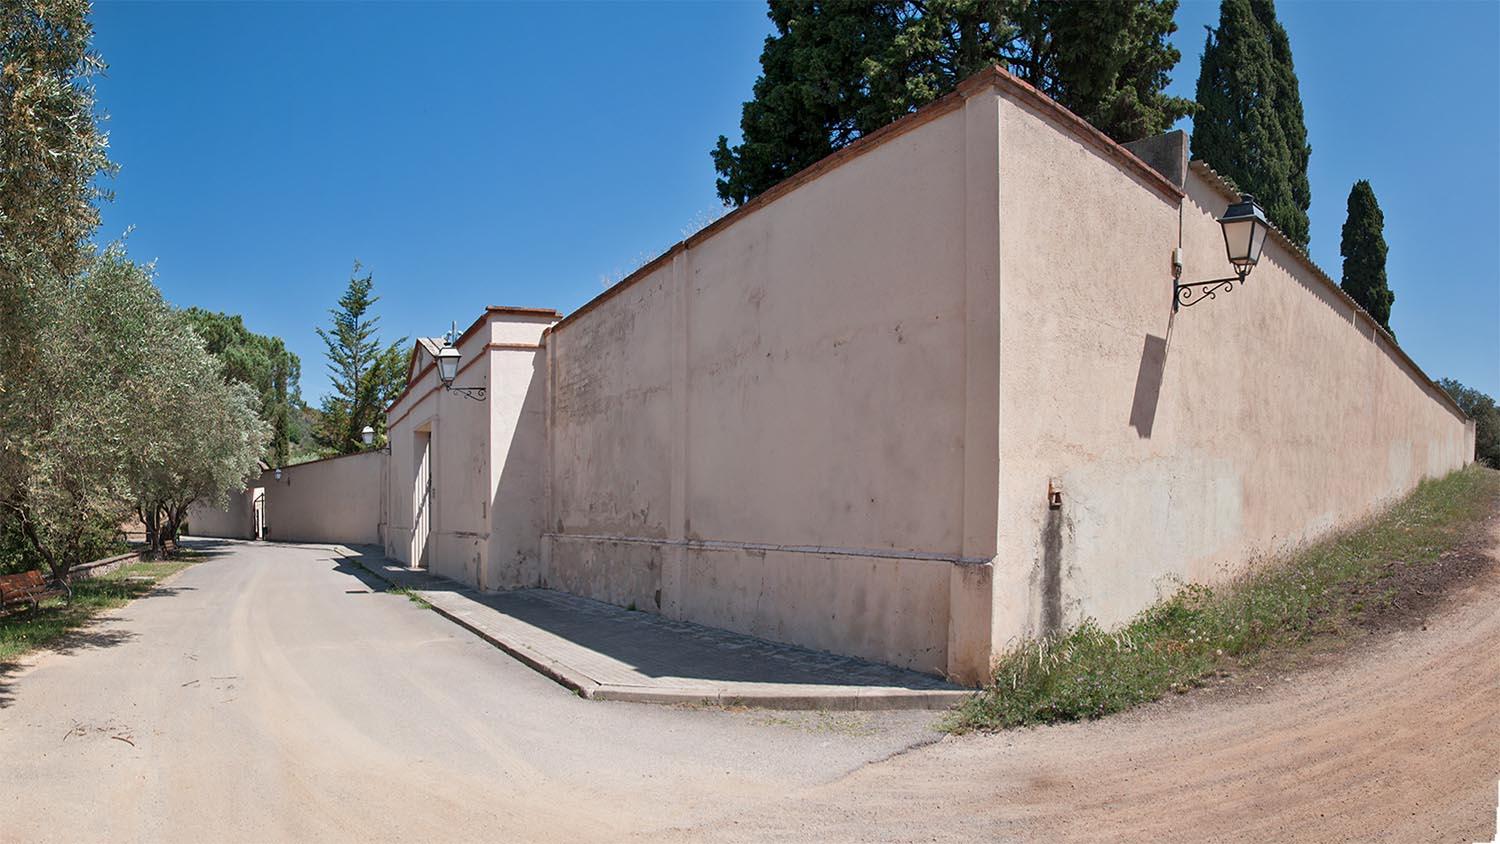 Vista exterior del cementiri des del sud, on es pot apreciar l’alçada del mur.